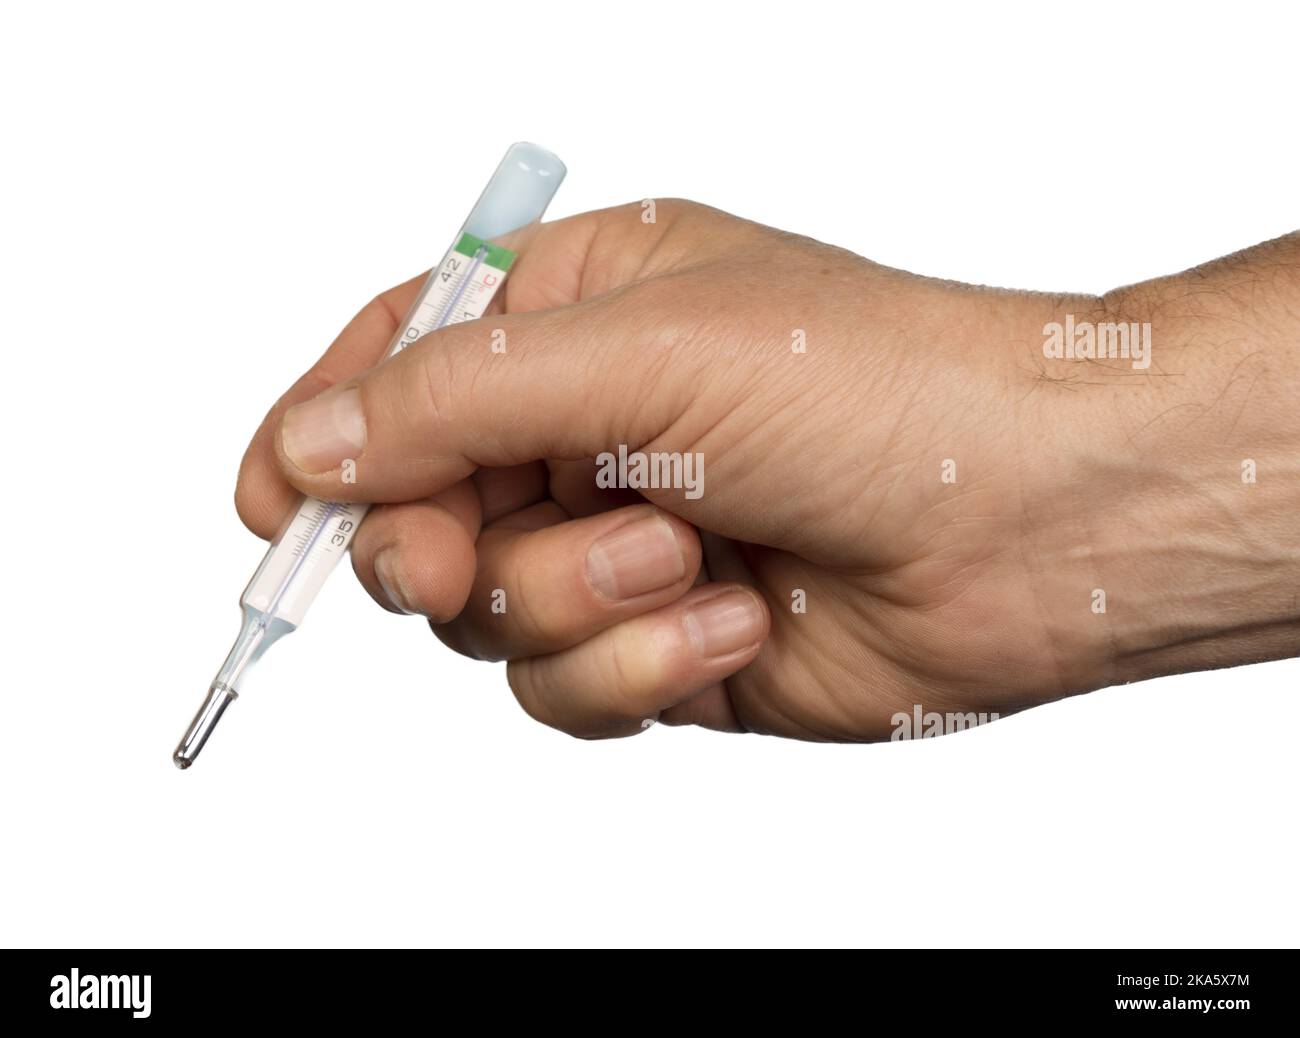 una mano maschio che tiene un termometro su una superficie trasparente Foto Stock